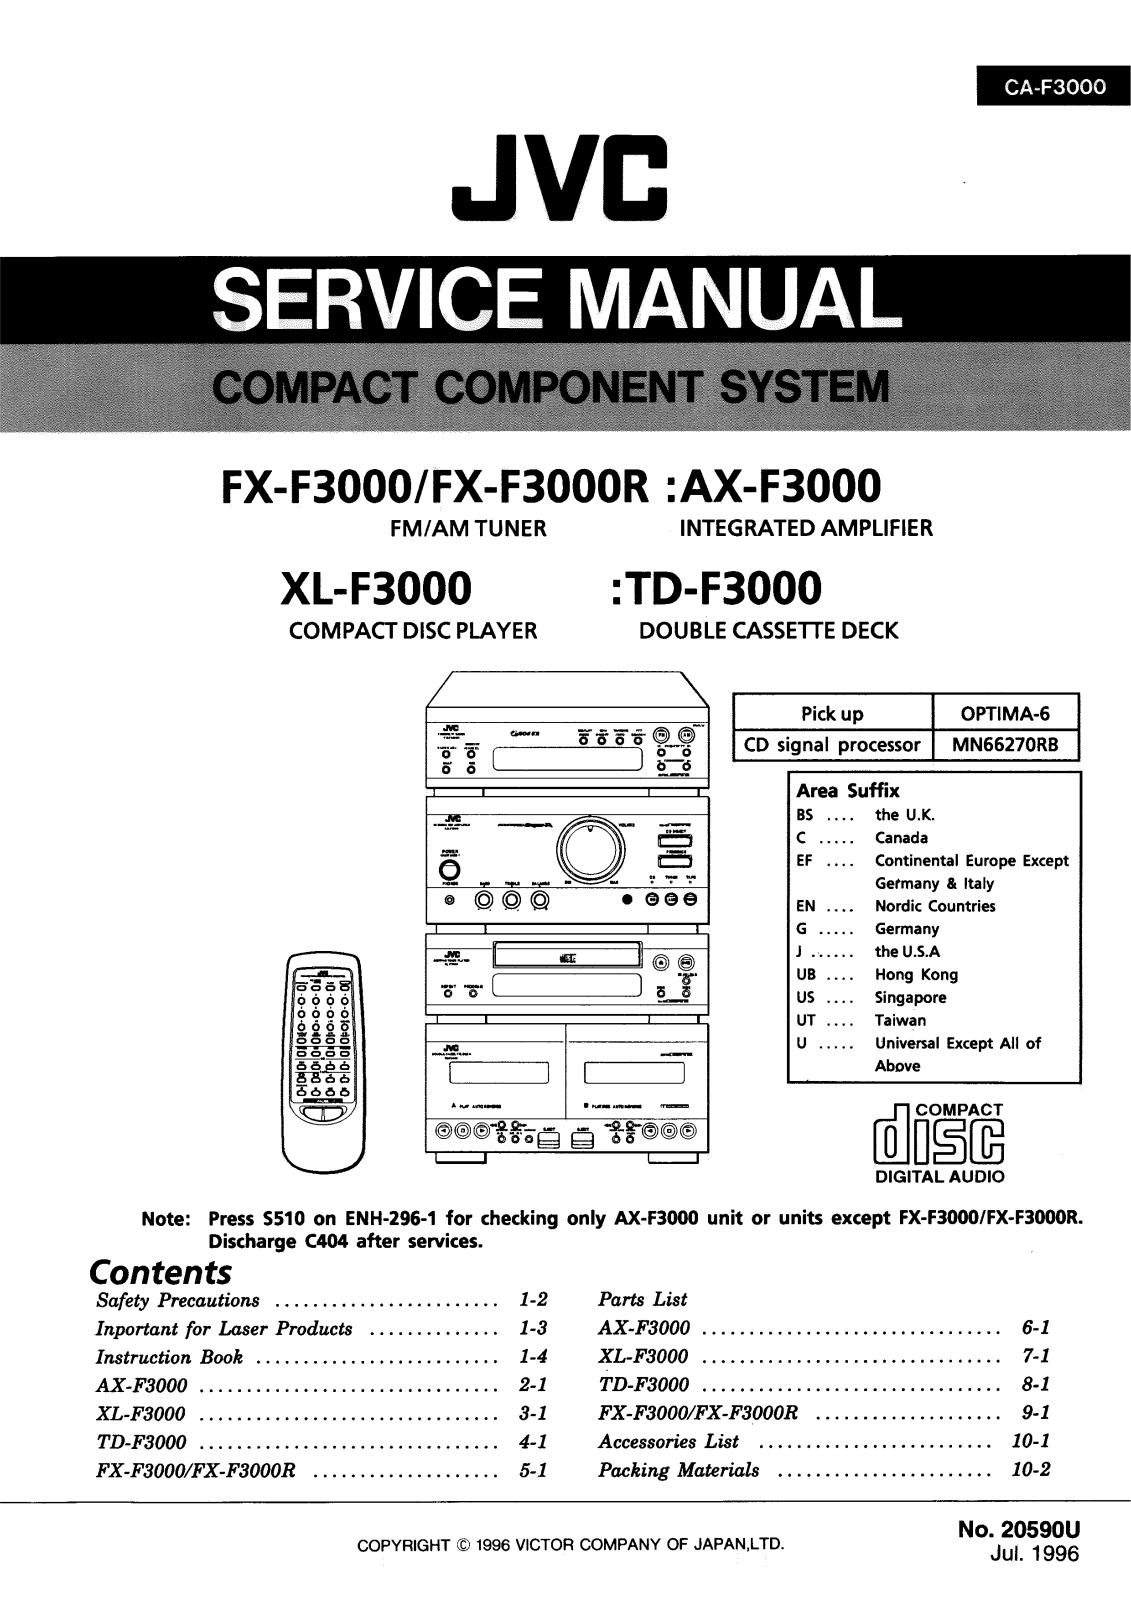 JVC FXF-3000, FXF-3000-R, AXF-3000, TDF-3000, XLF-3000 Service manual